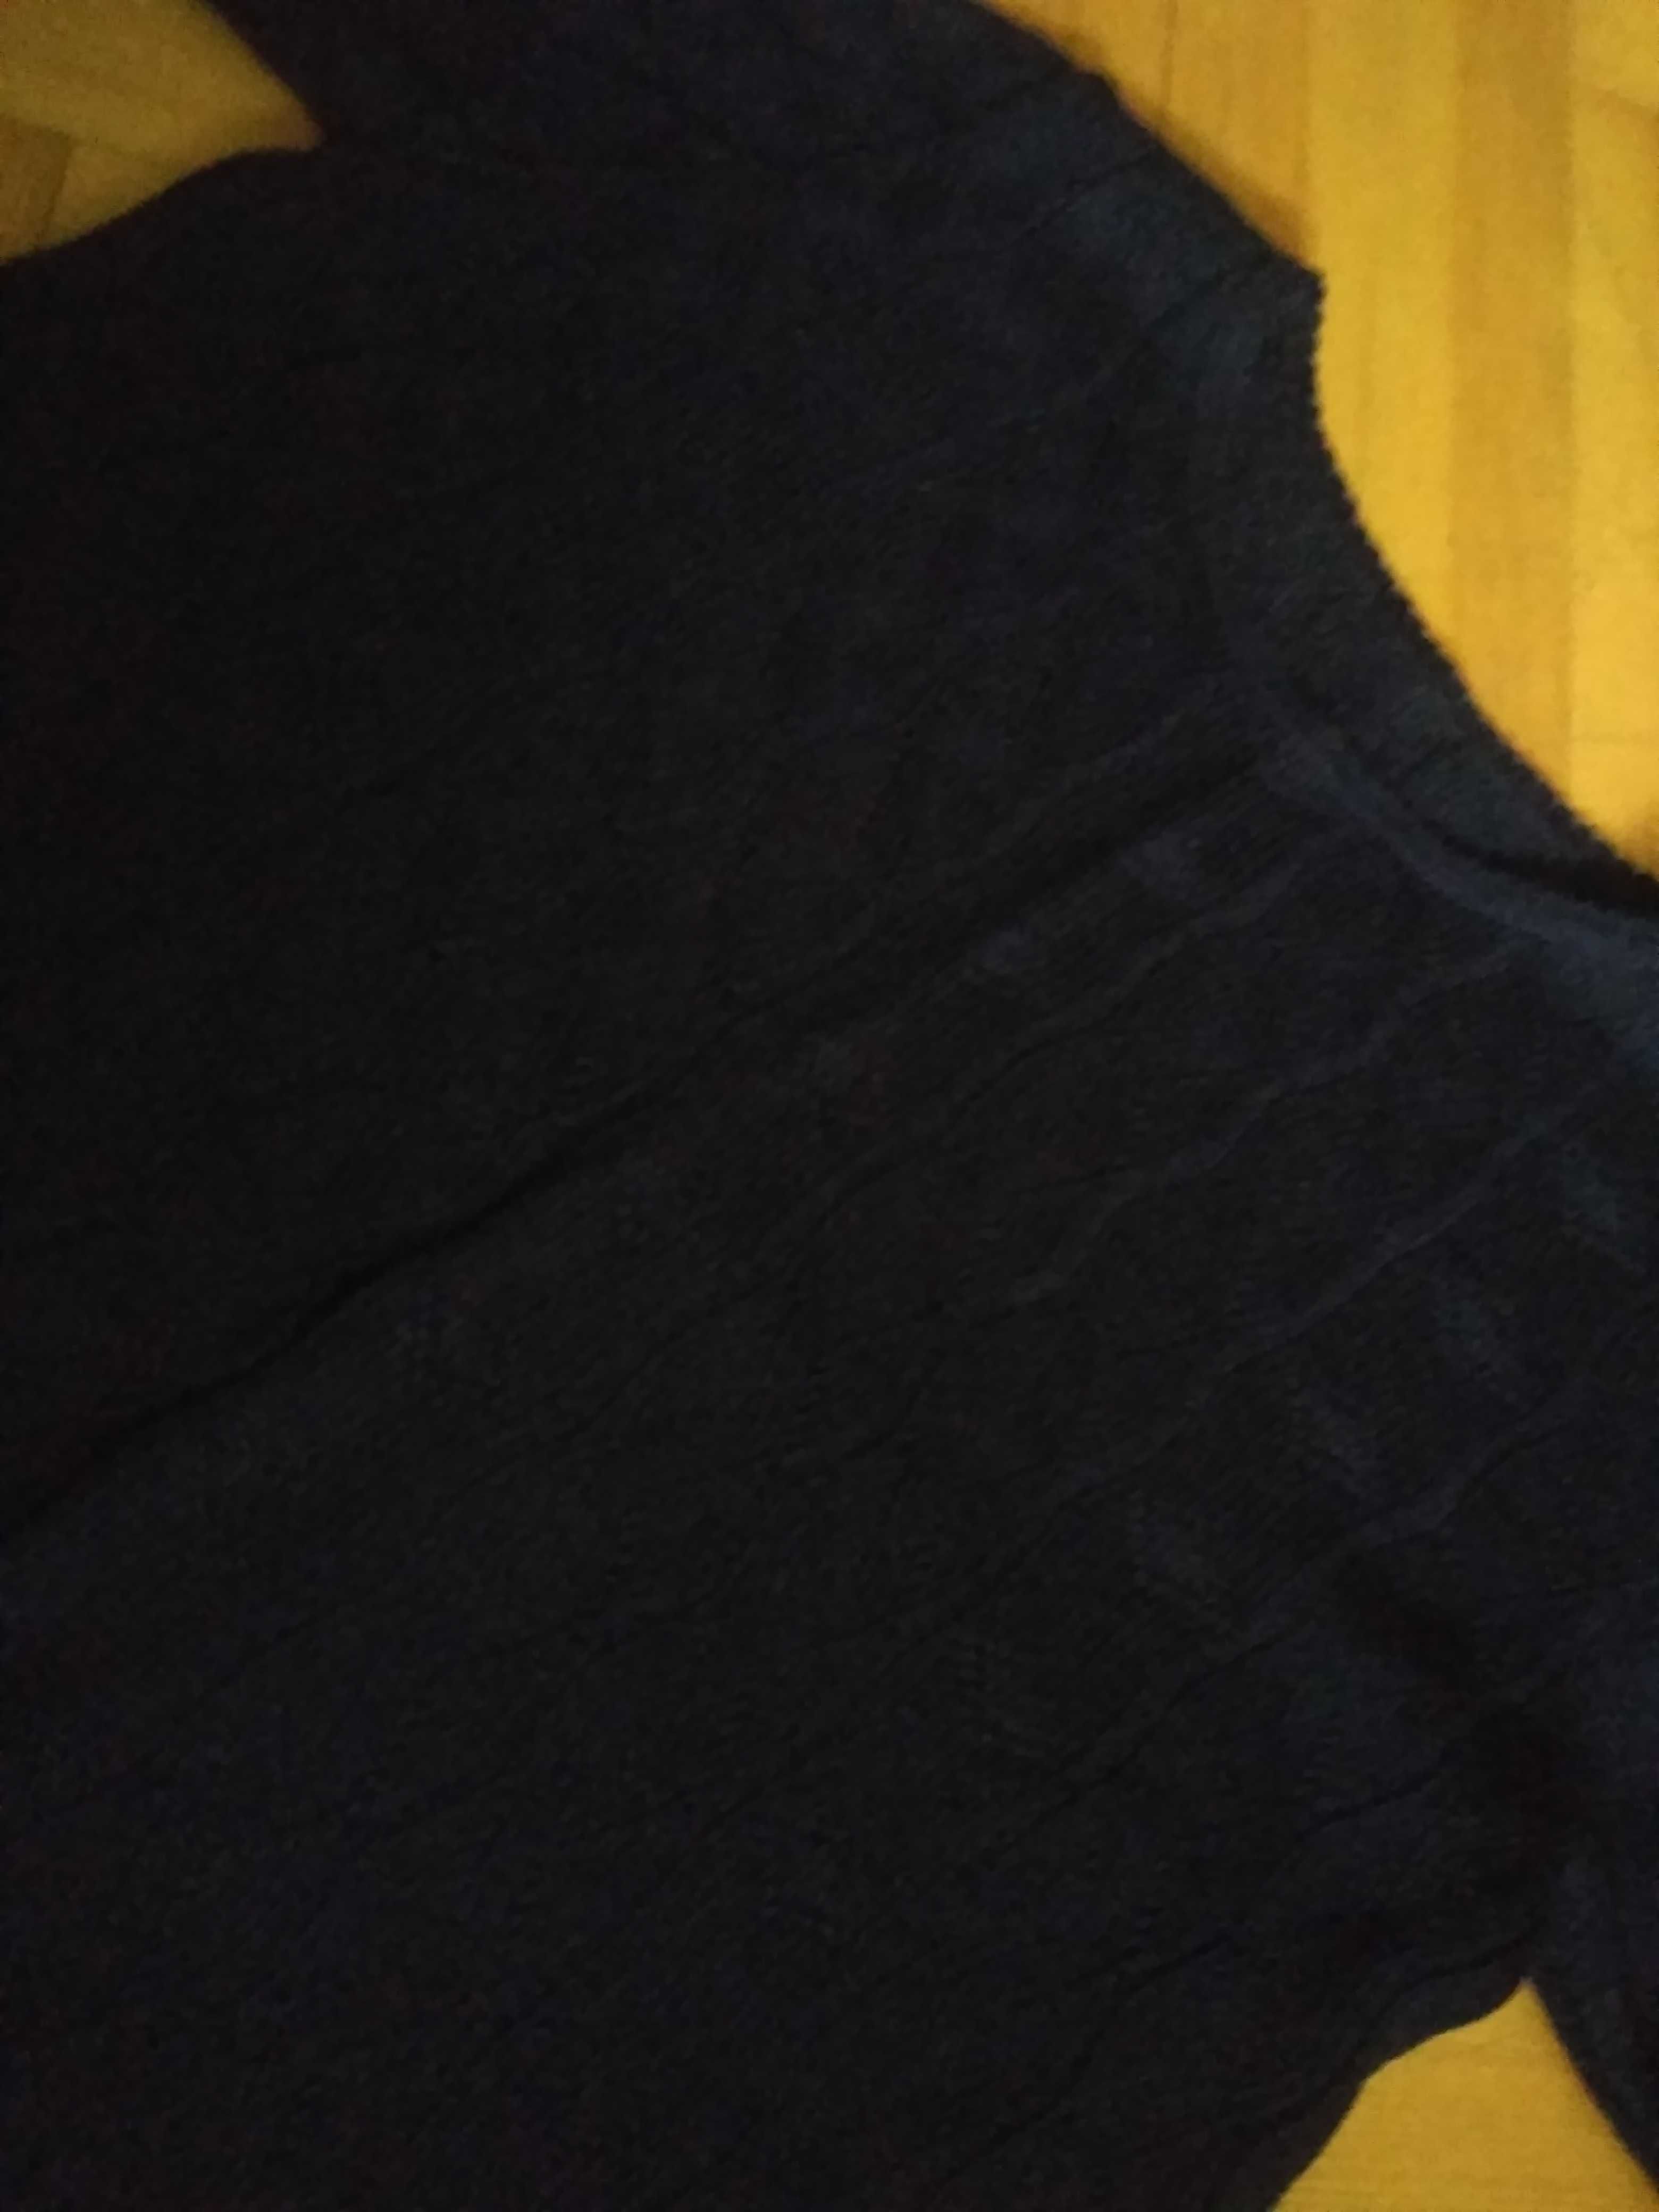 Sweterkowa bluzeczka, ażurowa z krótkim rękawem, granat, roz. 40/42